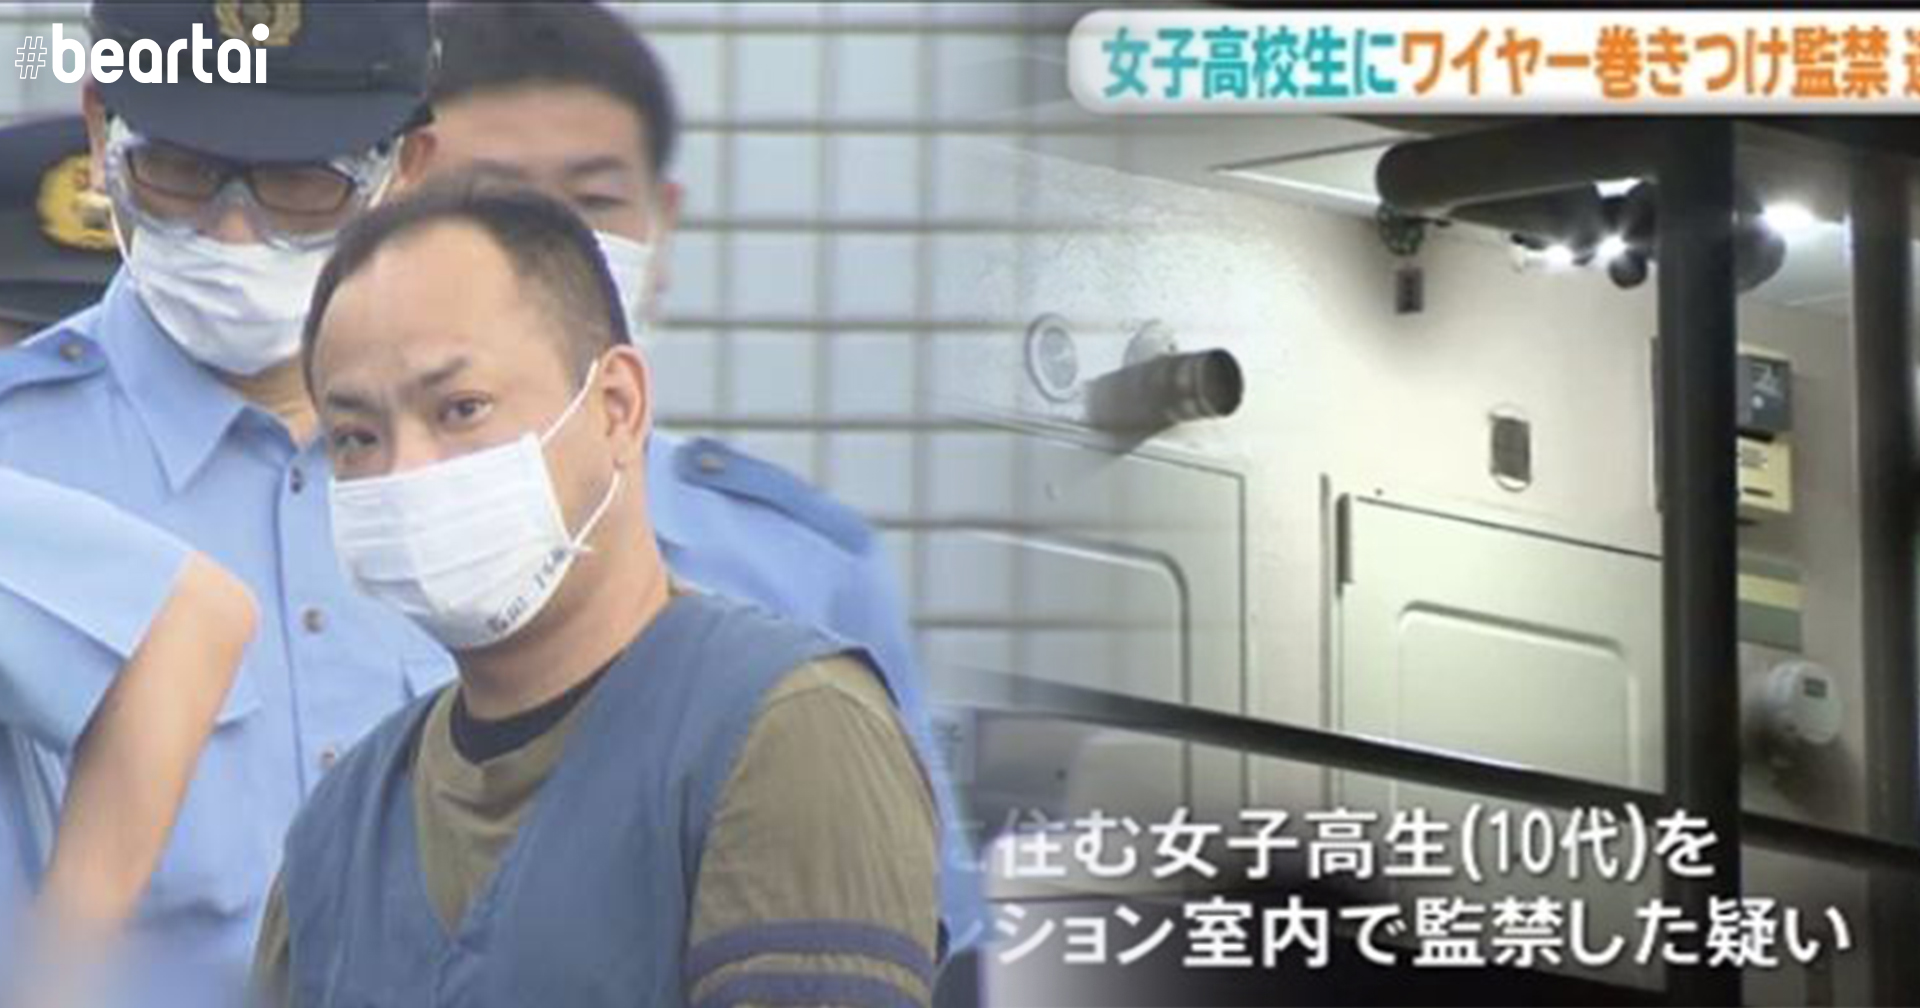 นักเรียนหญิง ม.ปลายญี่ปุ่นใช้เครื่องเกมส่งข้อความหาตำรวจให้รอดถูกลักพาตัว